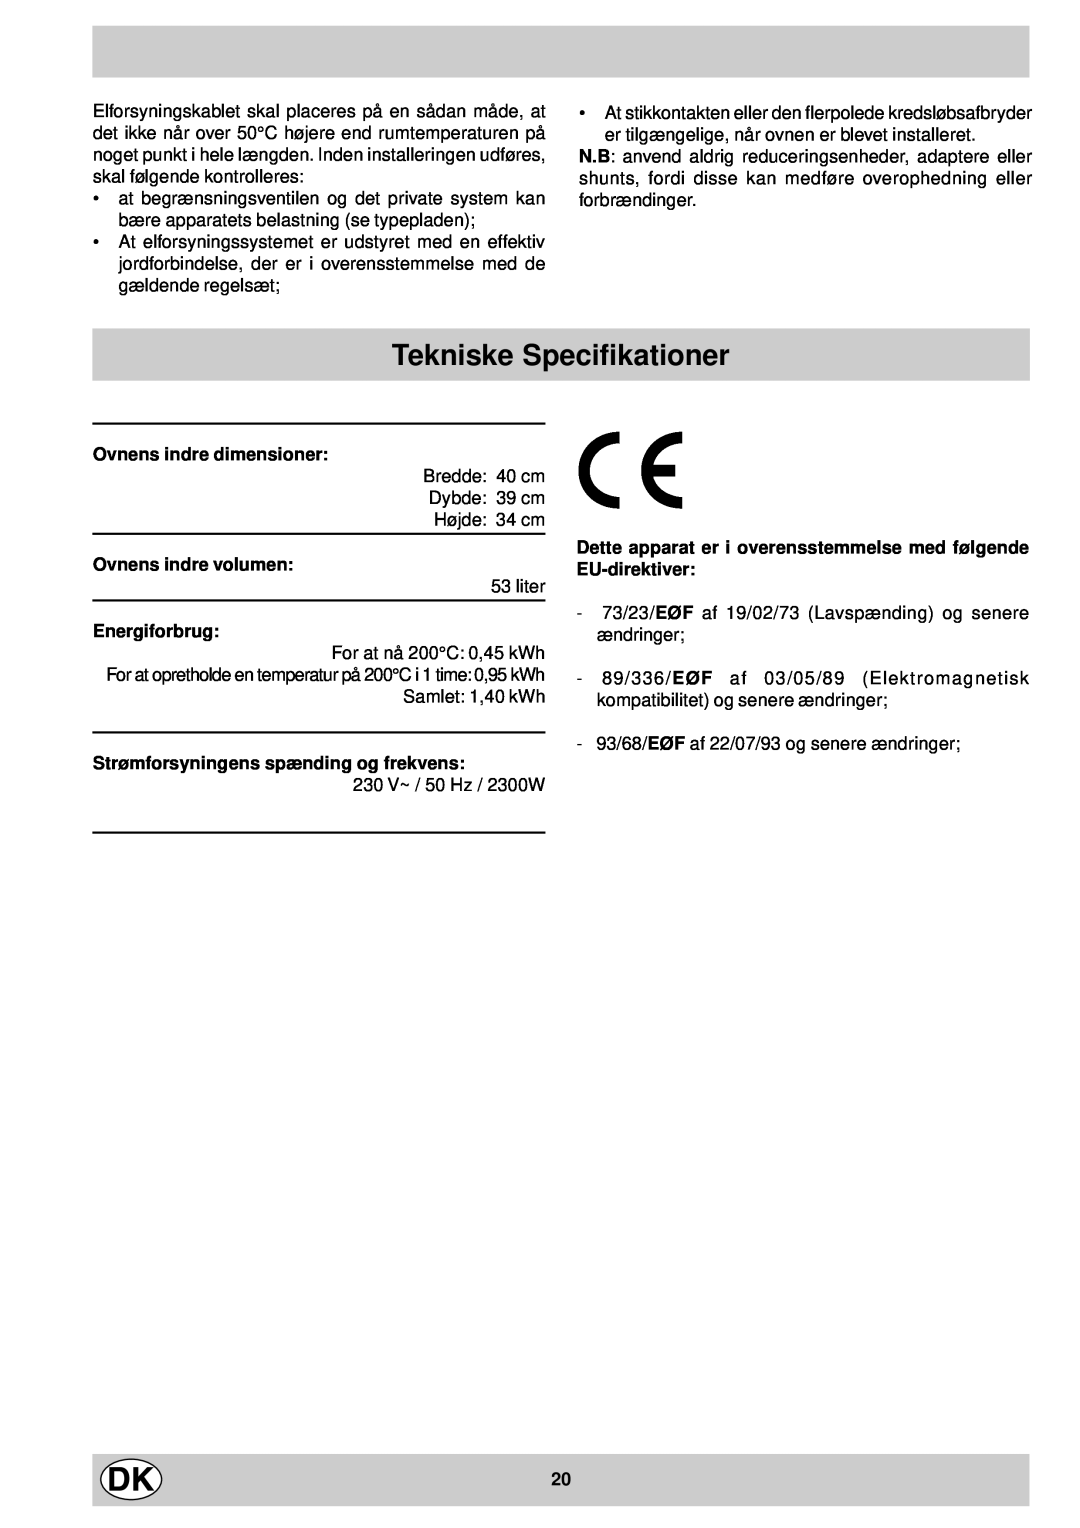 Indesit FM 37K IX DK manual Tekniske Specifikationer, Ovnens indre dimensioner, Ovnens indre volumen, Energiforbrug 